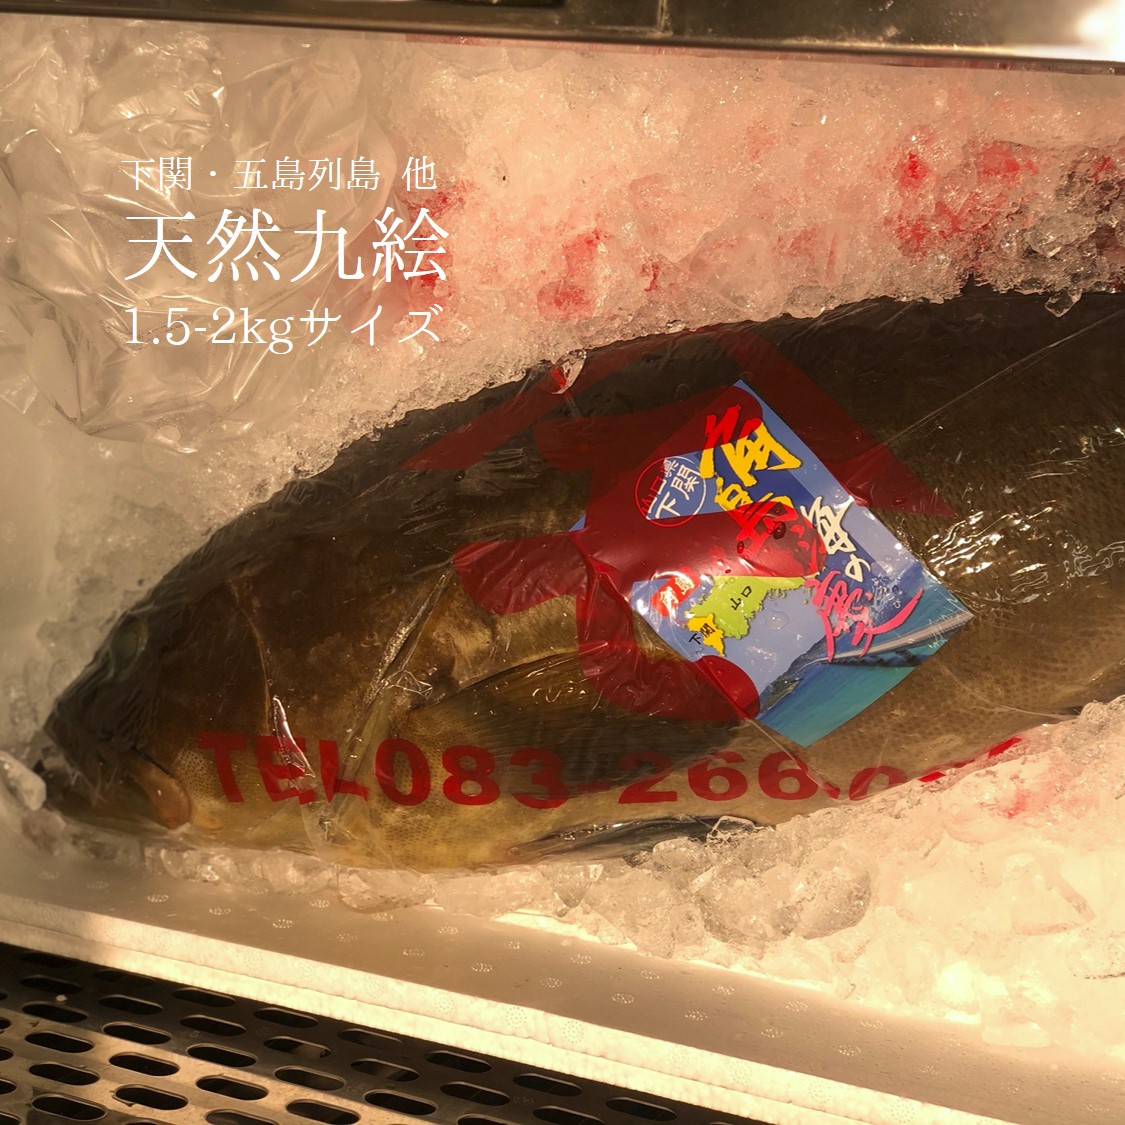 10月のおススメのお魚 Okawari 豊洲直送の高級海産物をお届け